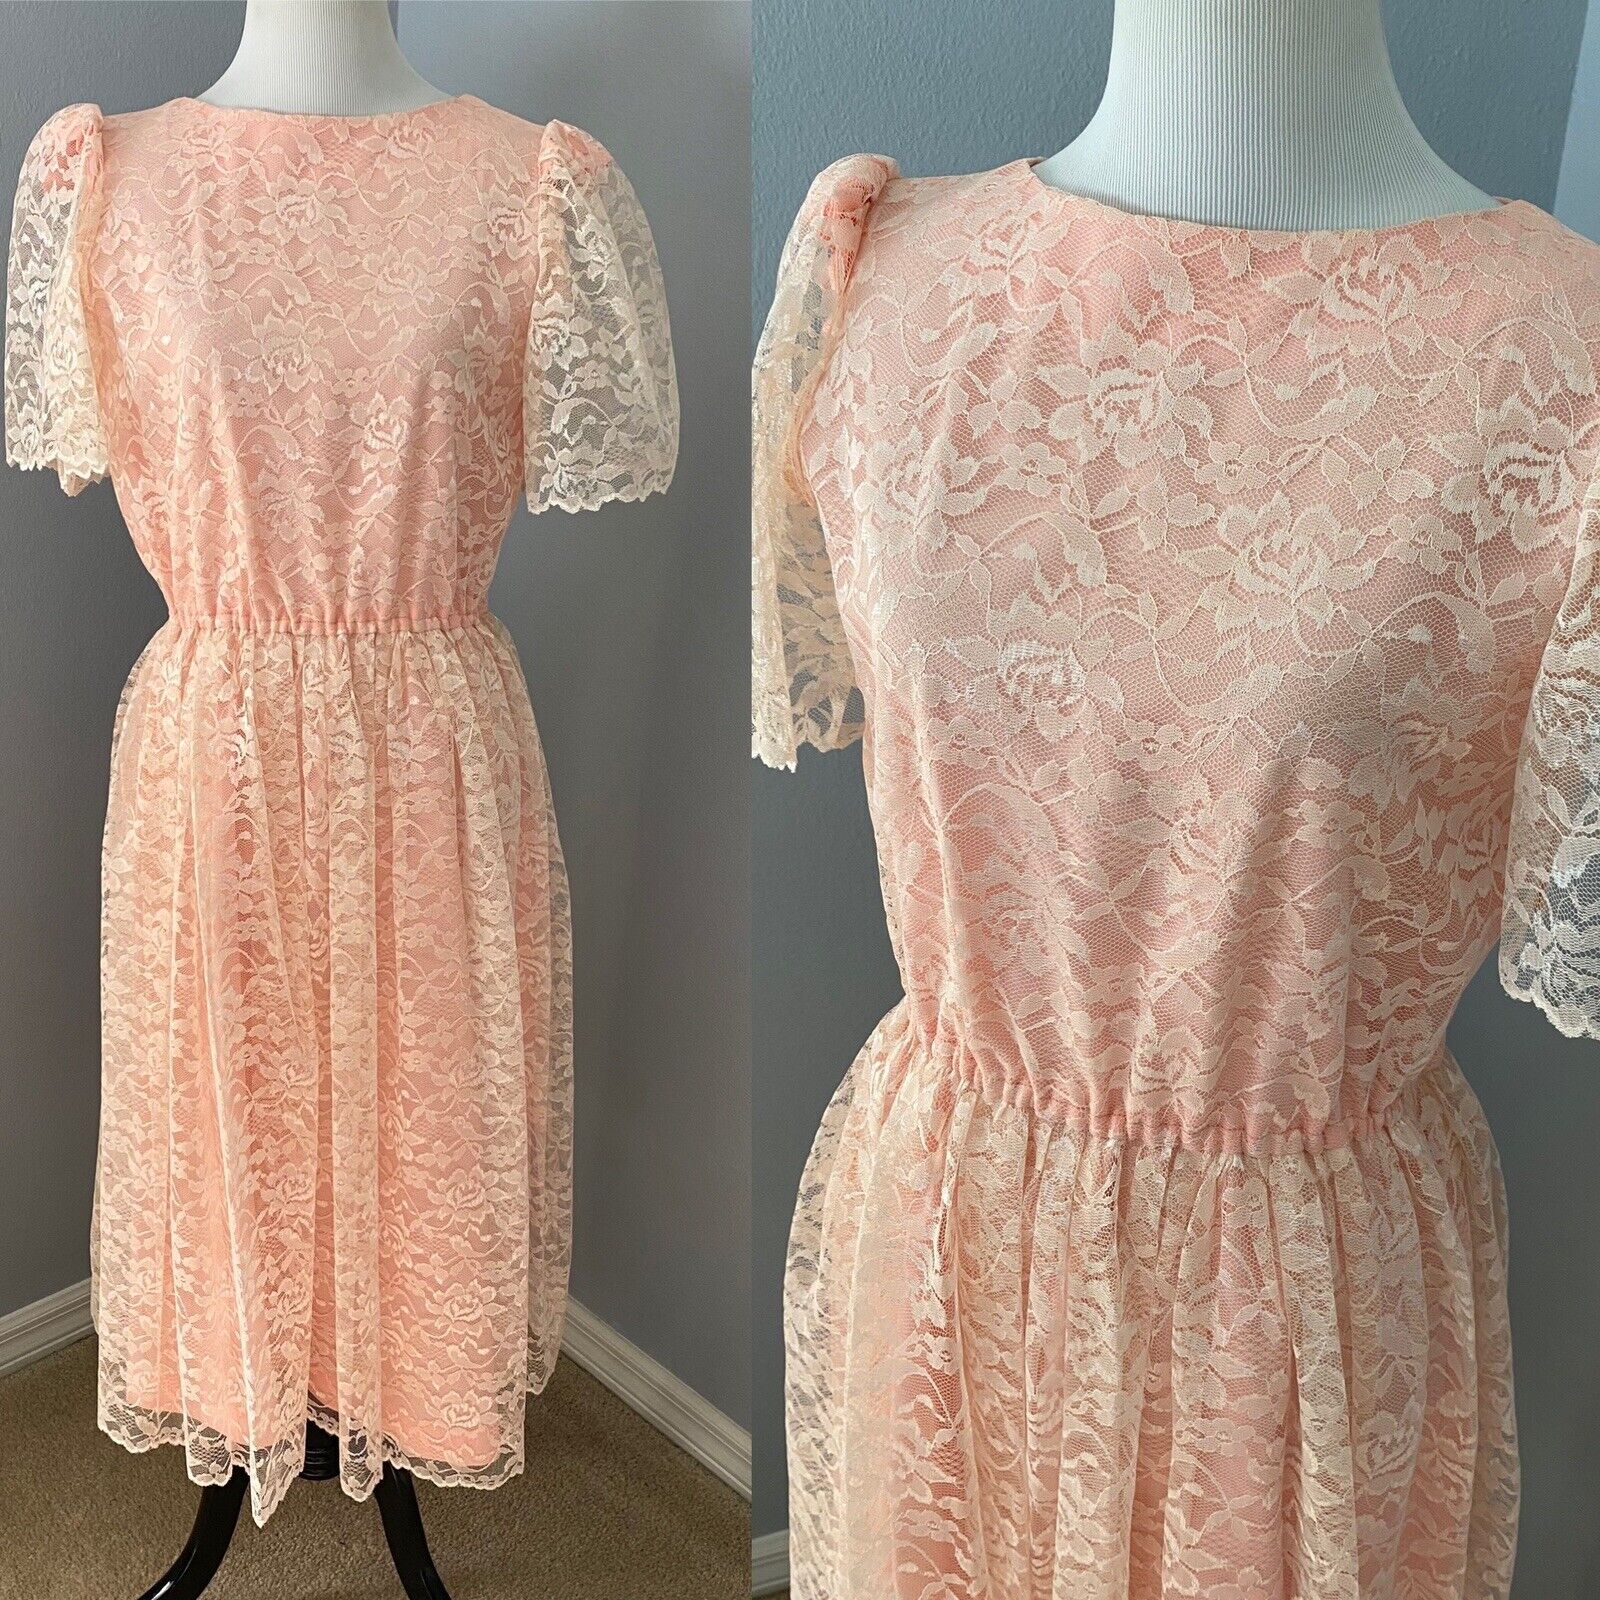 Vintage Lace Pink Dress Victorian tea Party Cottagecore Romantic Pretty Pink